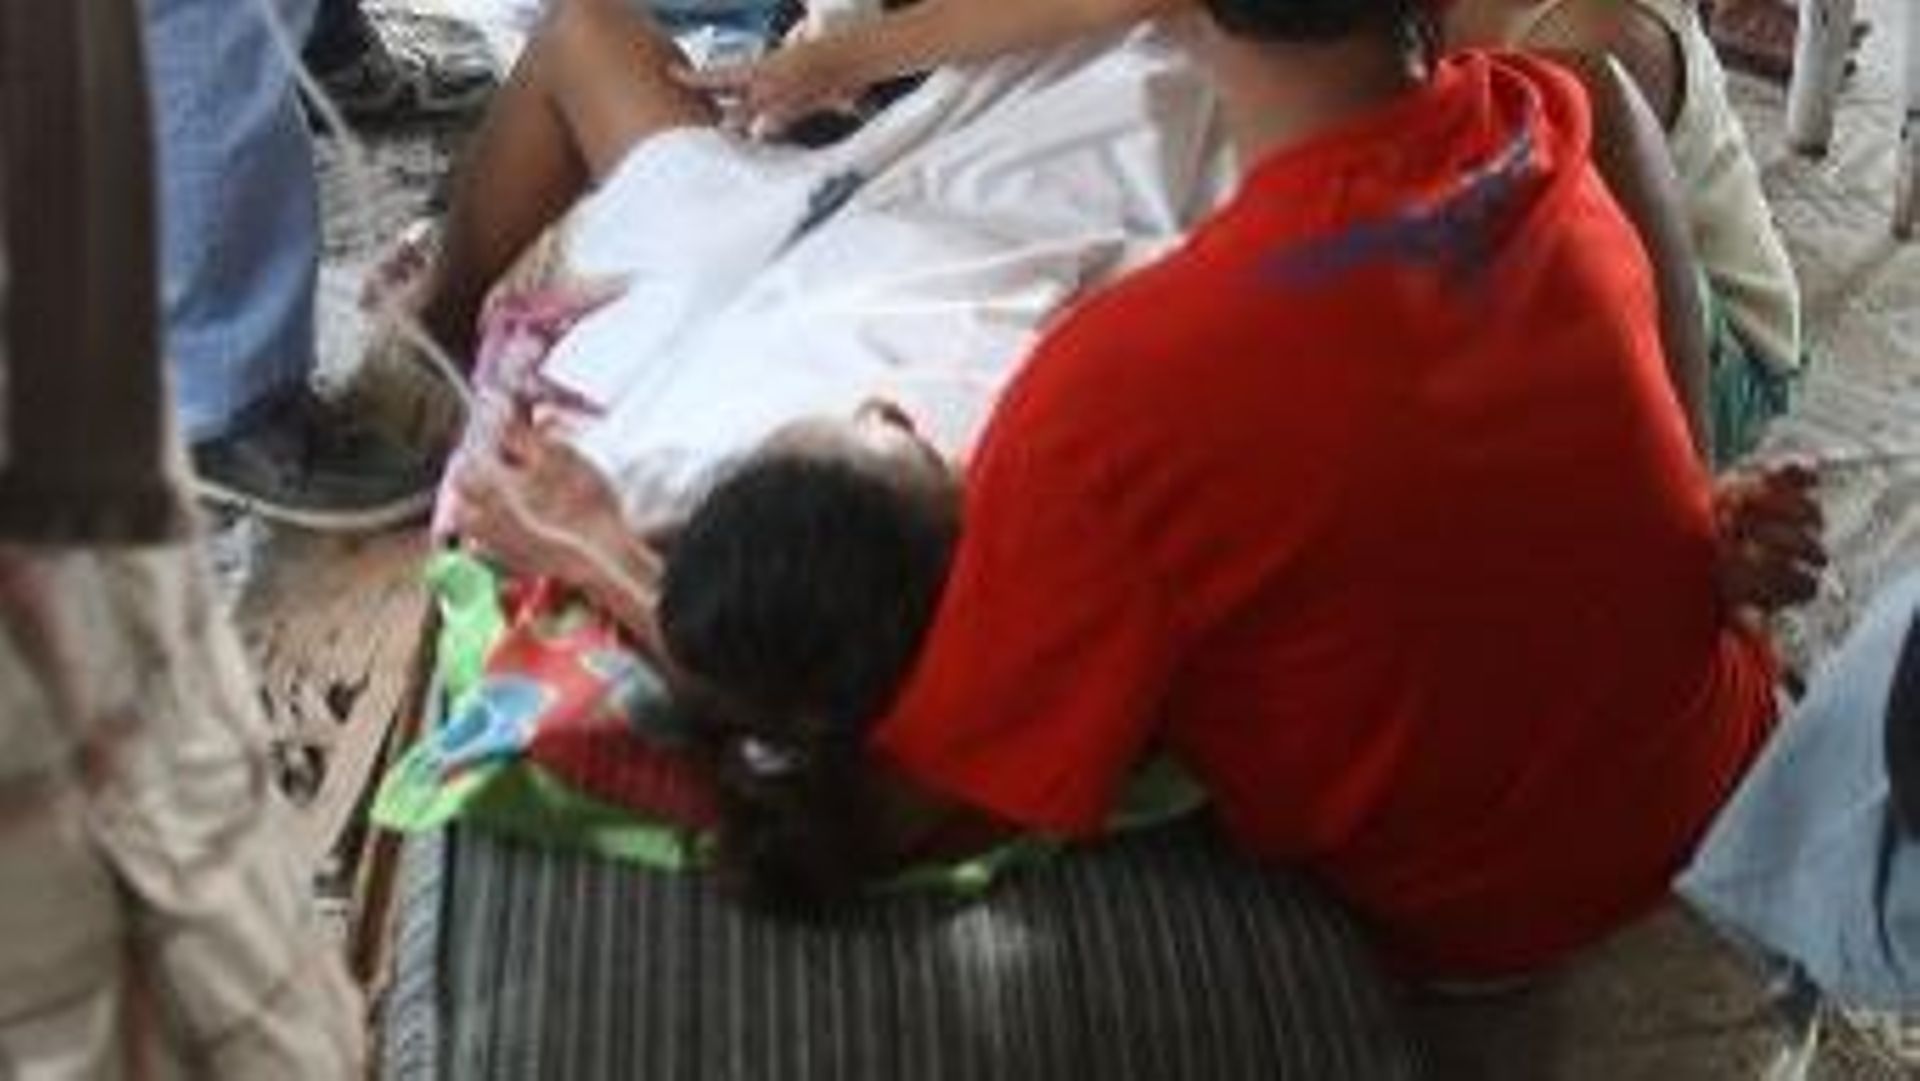 Emily Sagalis donne naissance à une petite fille dans un bâtiment de l'aéroport de Tacloban, ville touchée par le typhone, le 11 novembre 2013